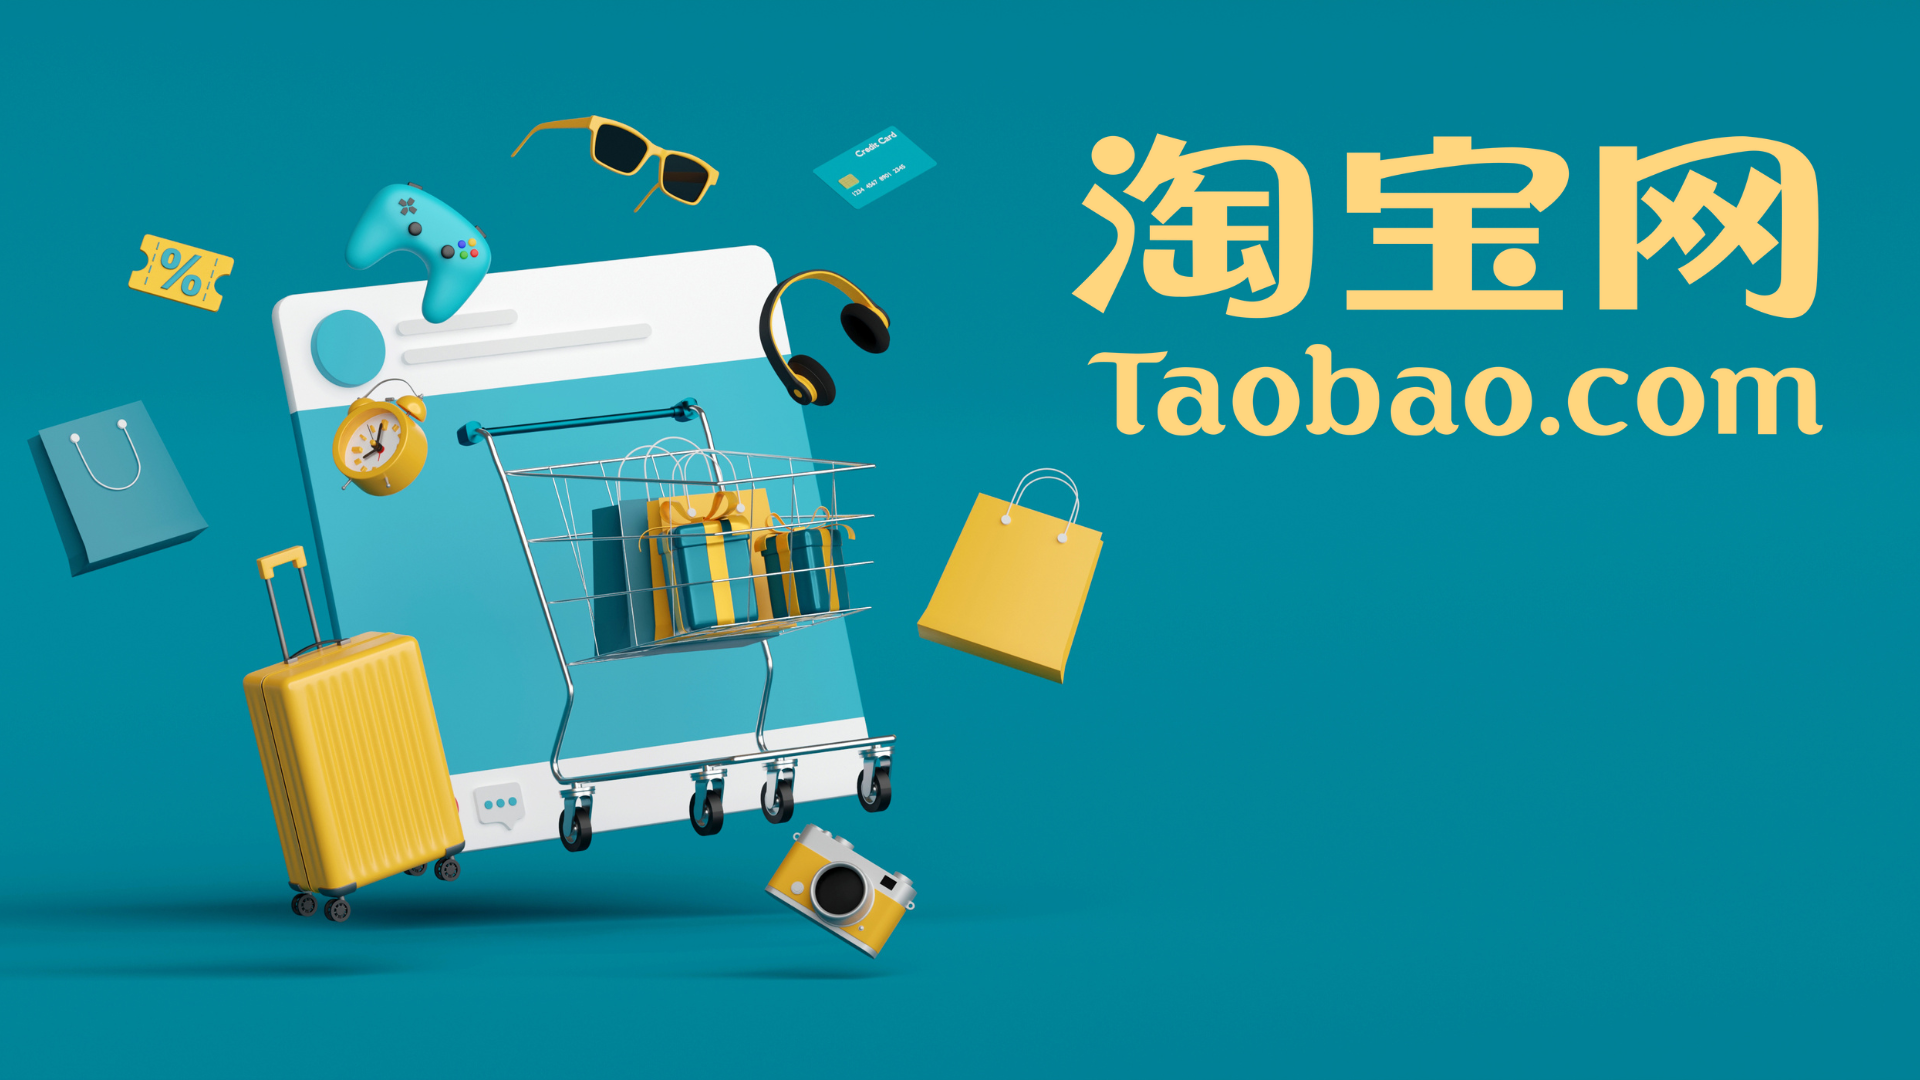 3 cách theo dõi shop trên Taobao siêu đơn giản